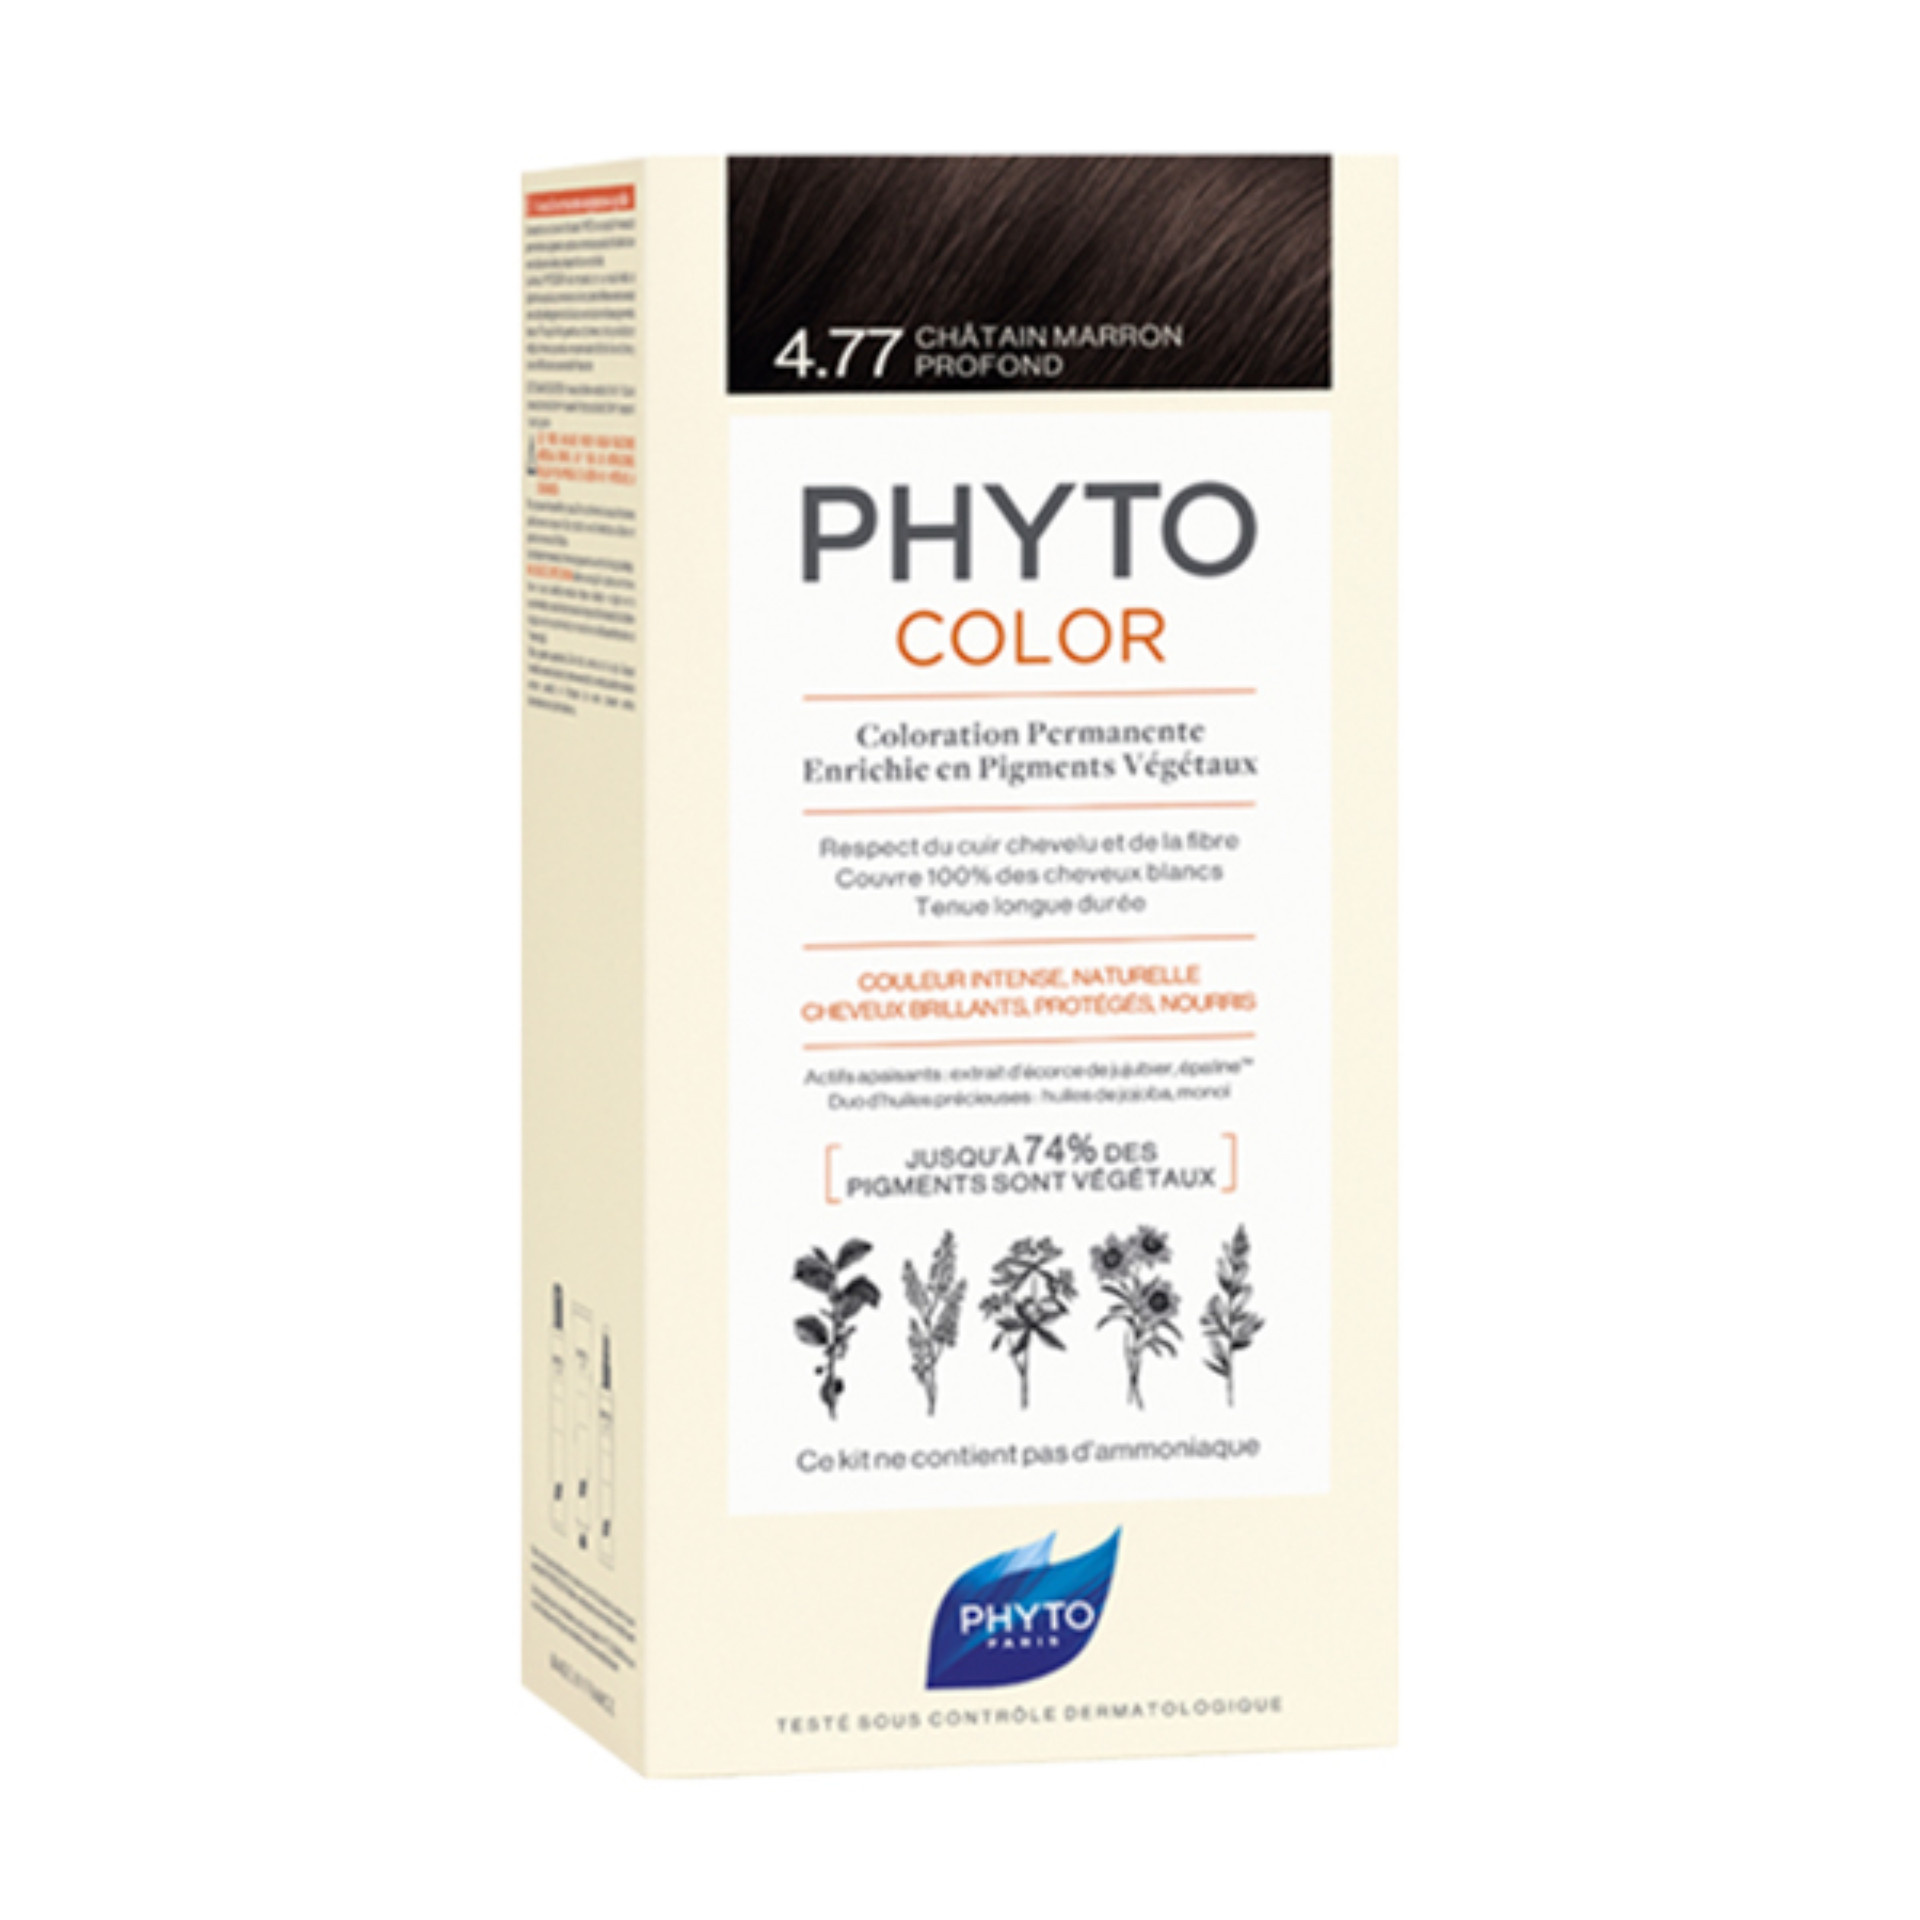 Phyto Phytocolor Colorao 4.77 Castanho Marrom 2018